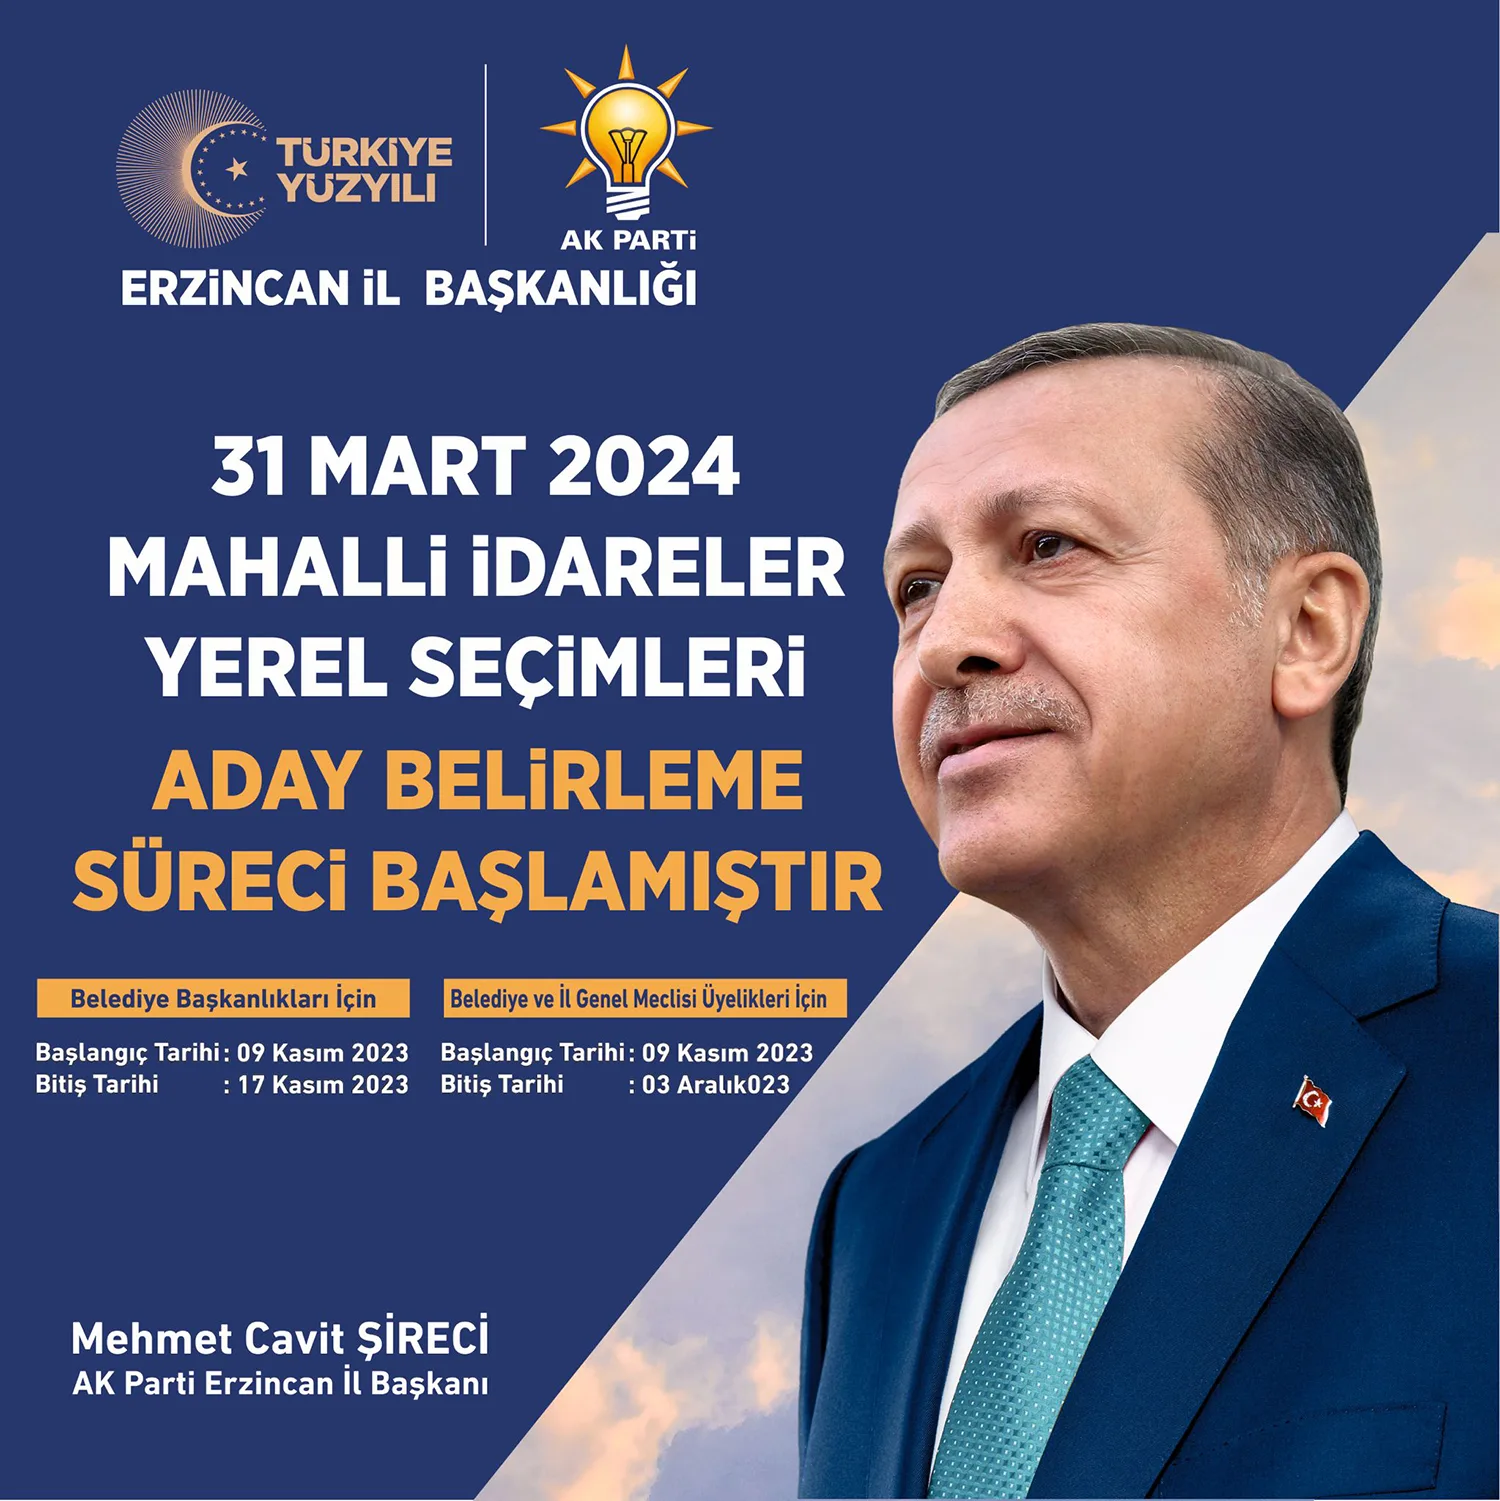 AK Parti Erzincan İl Başkanı , Mehmet Cavit Şireci, partinin yerel seçim takvimine ilişkin bilgi verdi